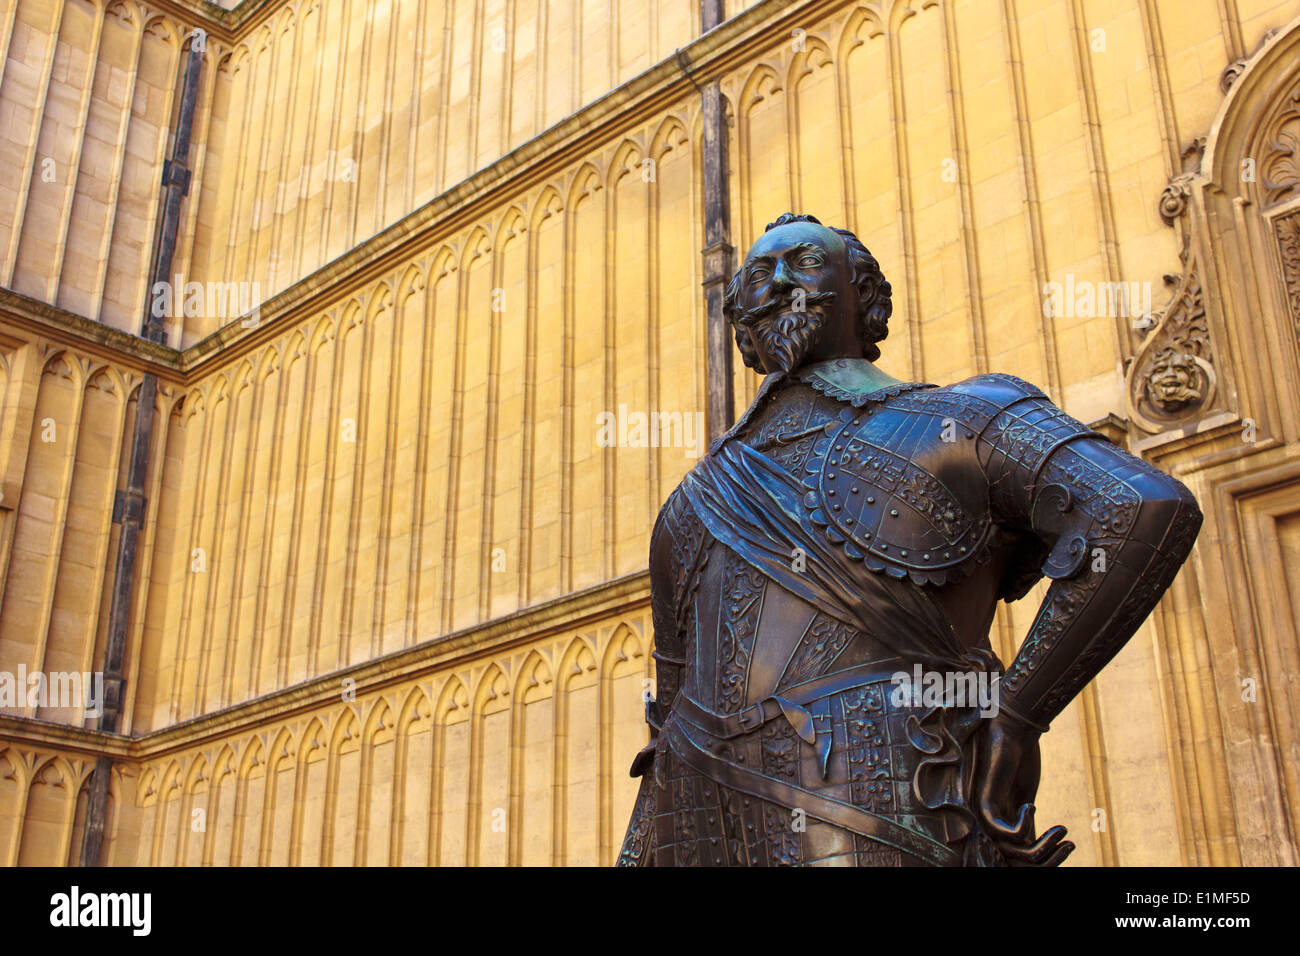 Statue de Wiliam Herbert, troisième comte de Pembroke, en face de la Bodleian Library, Oxford, Angleterre. Banque D'Images